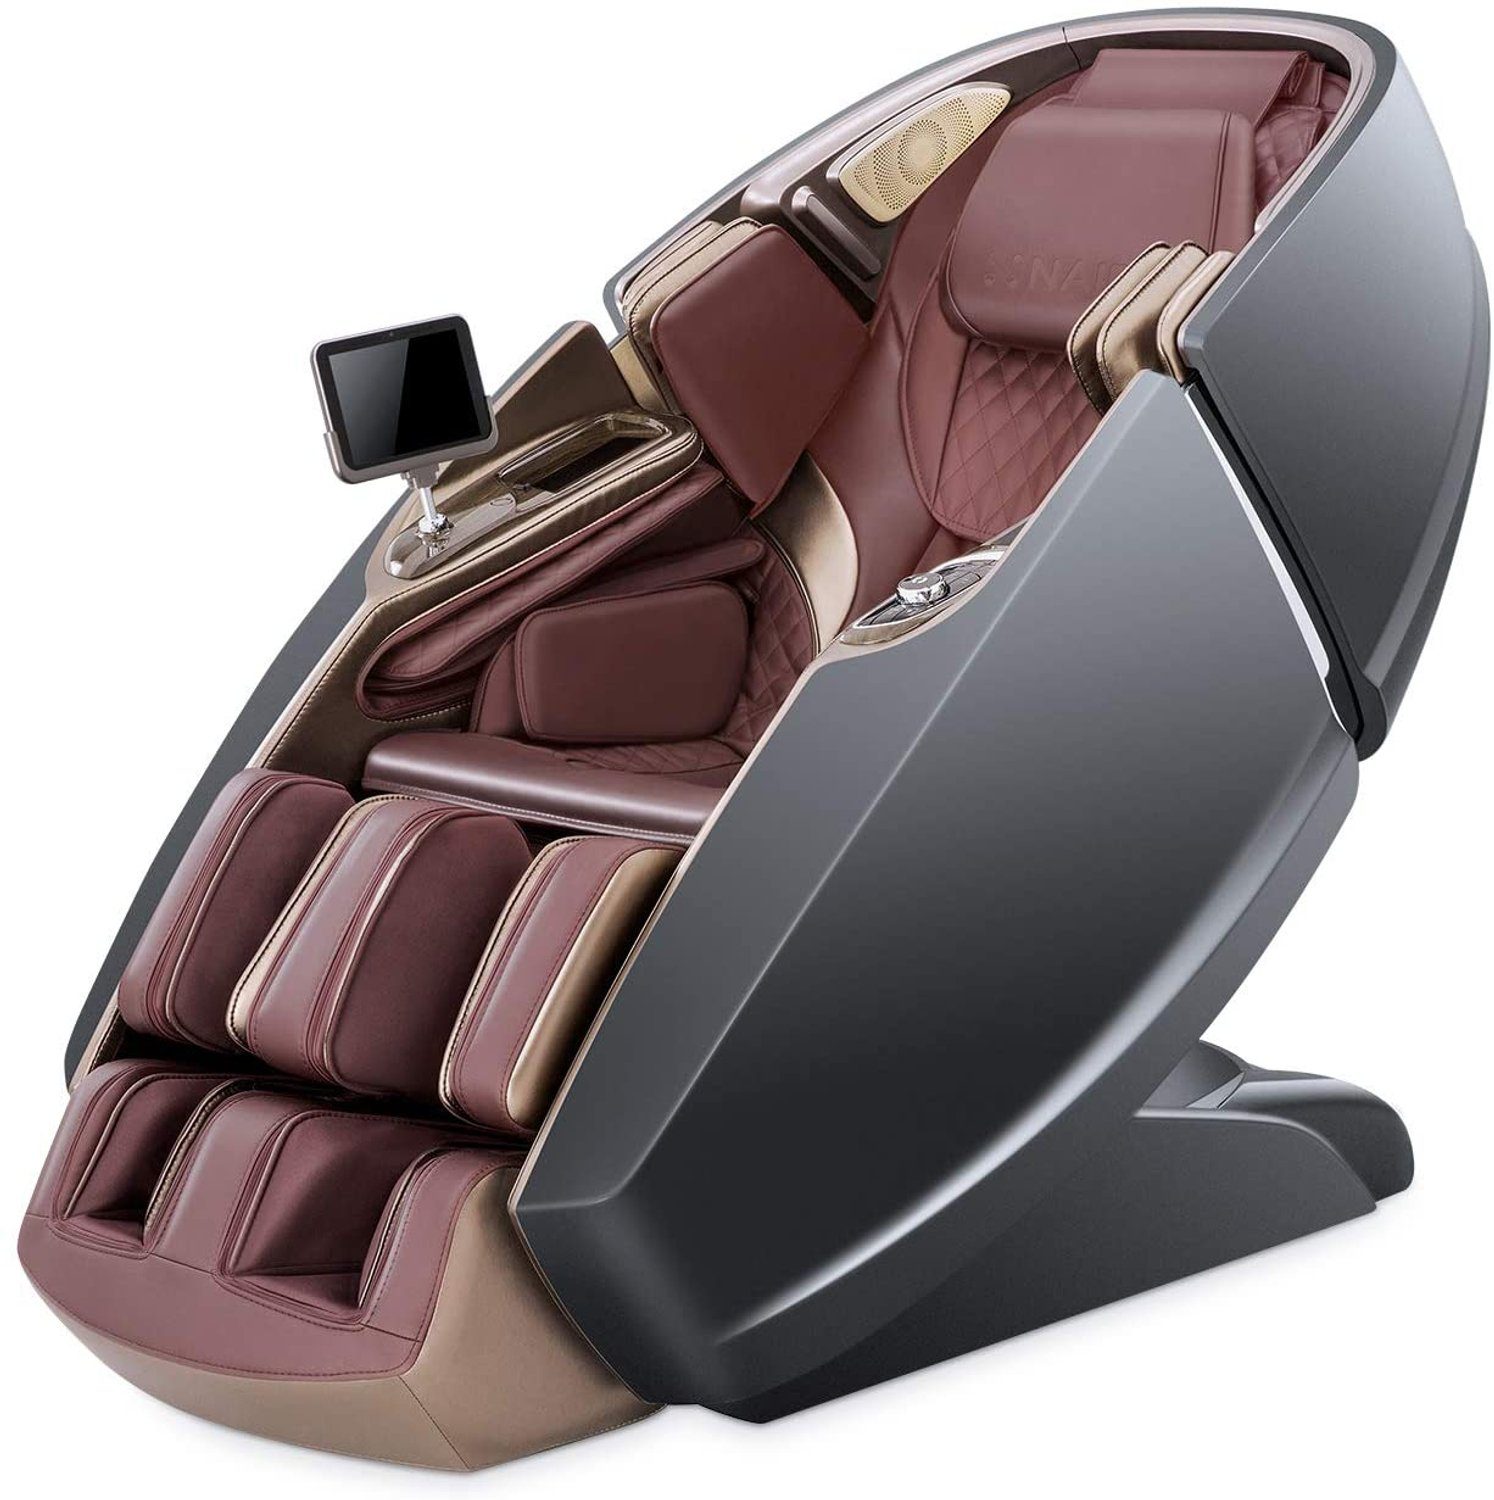 NAIPO Massagesessel, 3D High-End Tablet, Raumkapsel-Design GRAU-ROT-AUFBAUSERVICE mit Massagestuhl